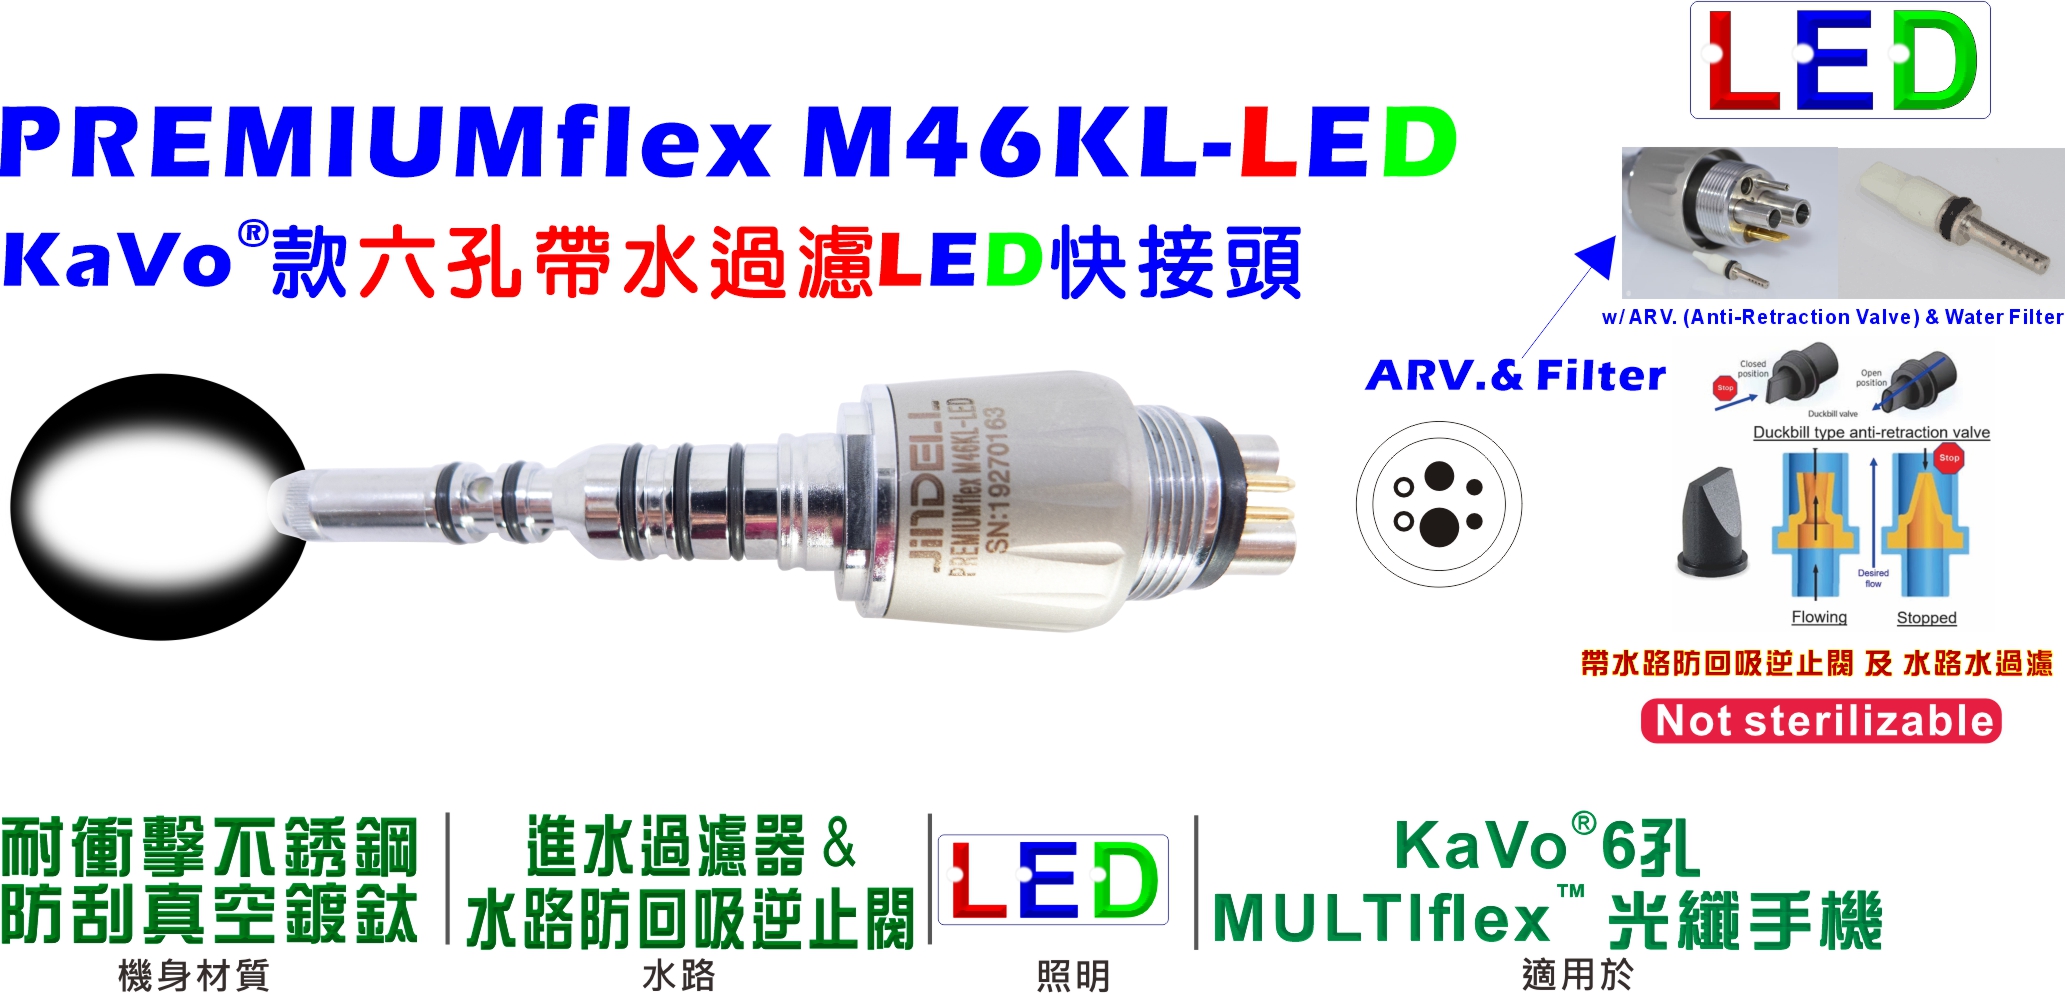 PREMIUMflex M46KL-LED